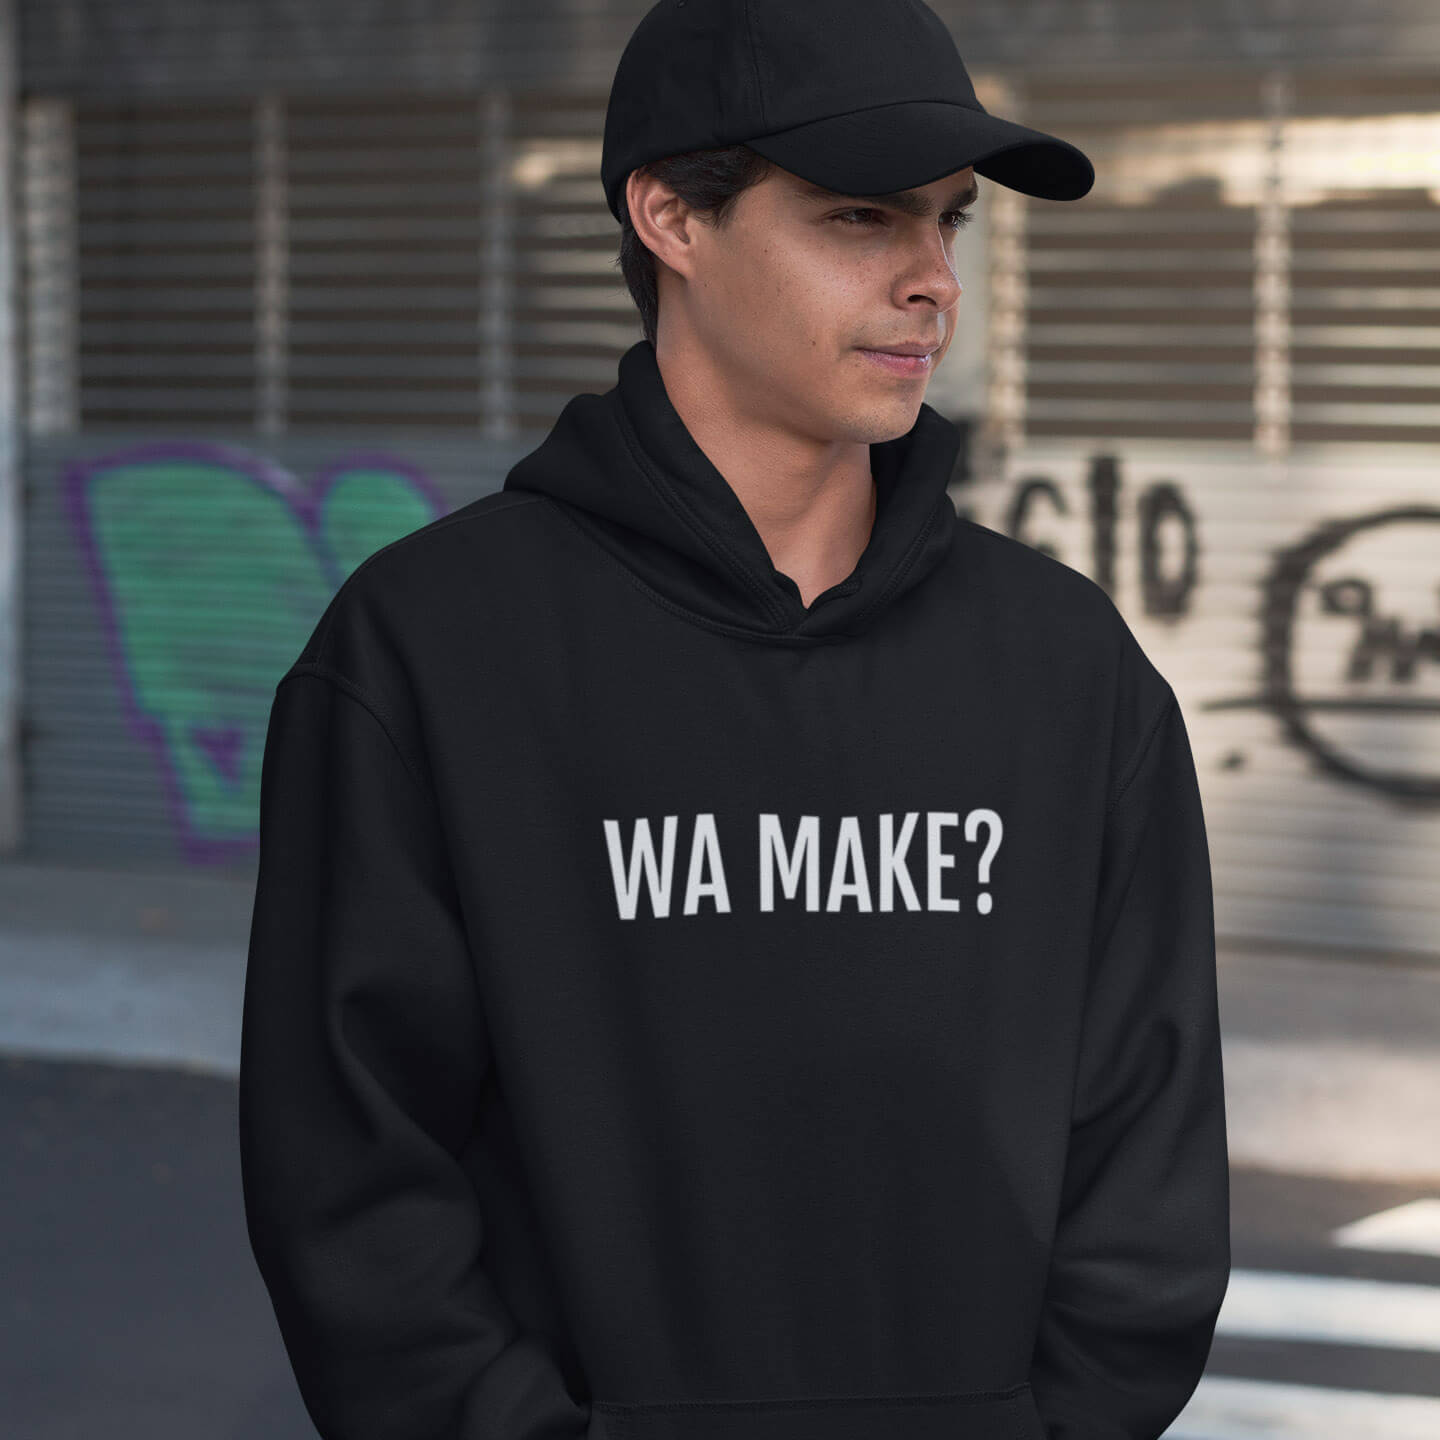 Tiener met Wa make hoodie in het Genkse cité dialect